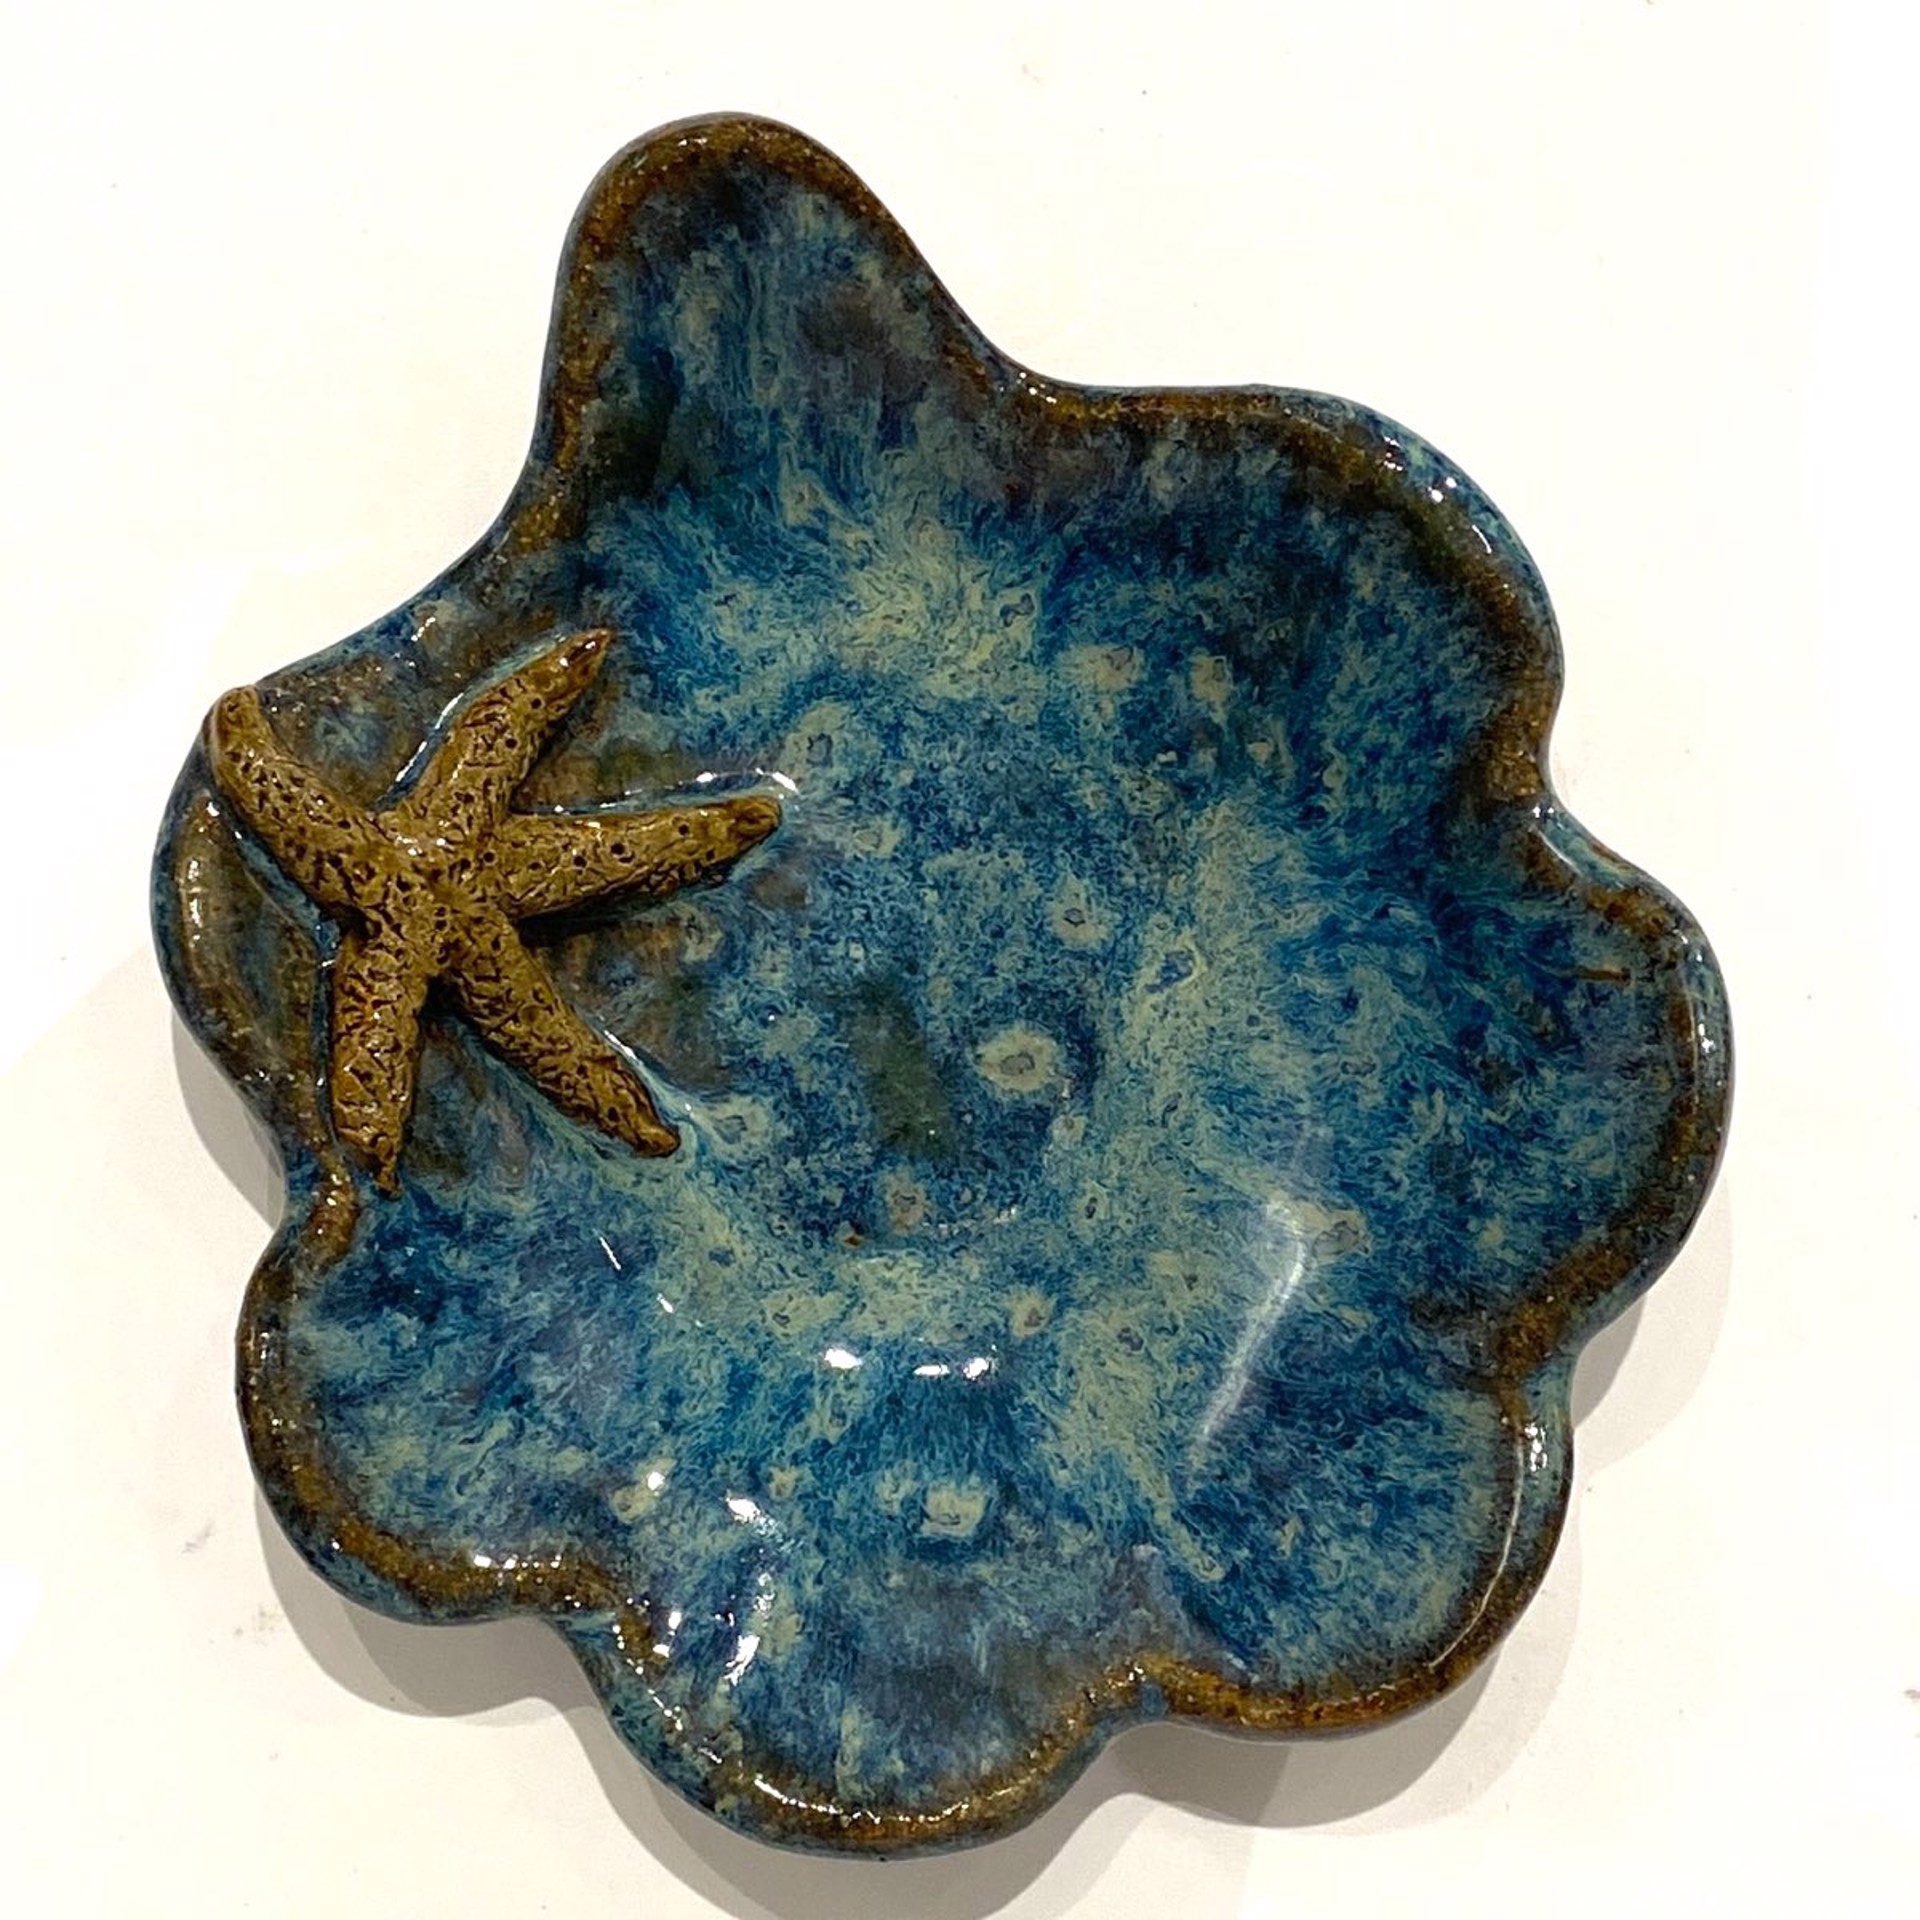 LG23-951 Mini Pool Dish with Starfish (Blue Glaze) by Jim & Steffi Logan